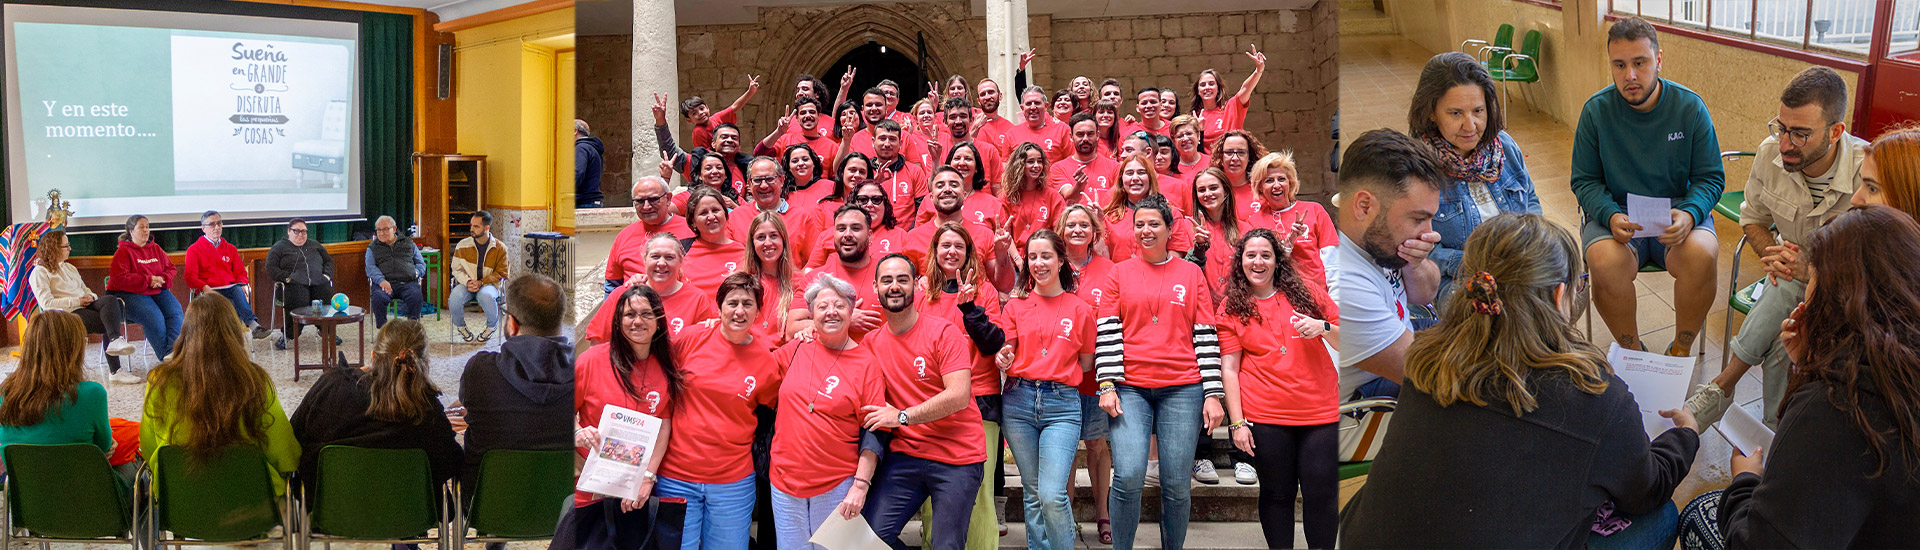 El Programa de Voluntariado Misionero Salesiano envía a 47 personas a 11 países para “cuidar sueños”